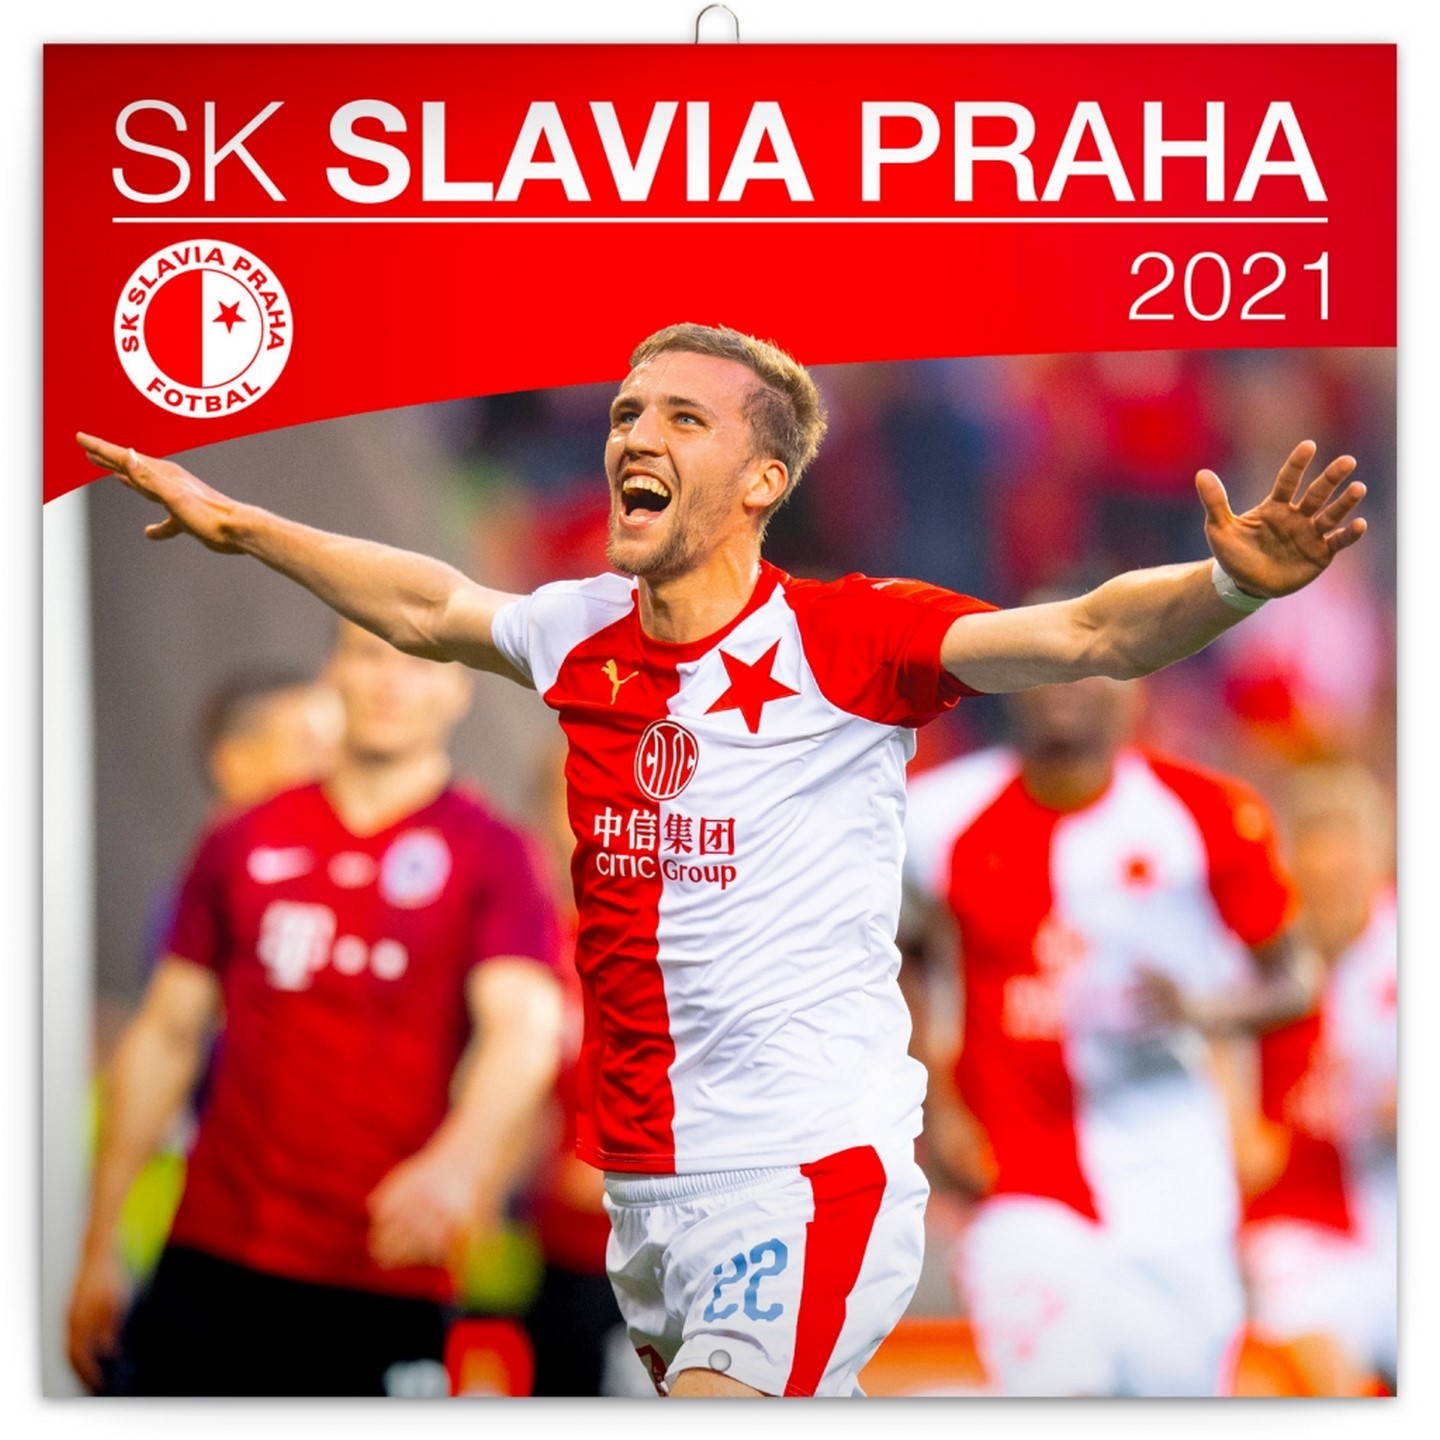 Club info SK Slavia Praha